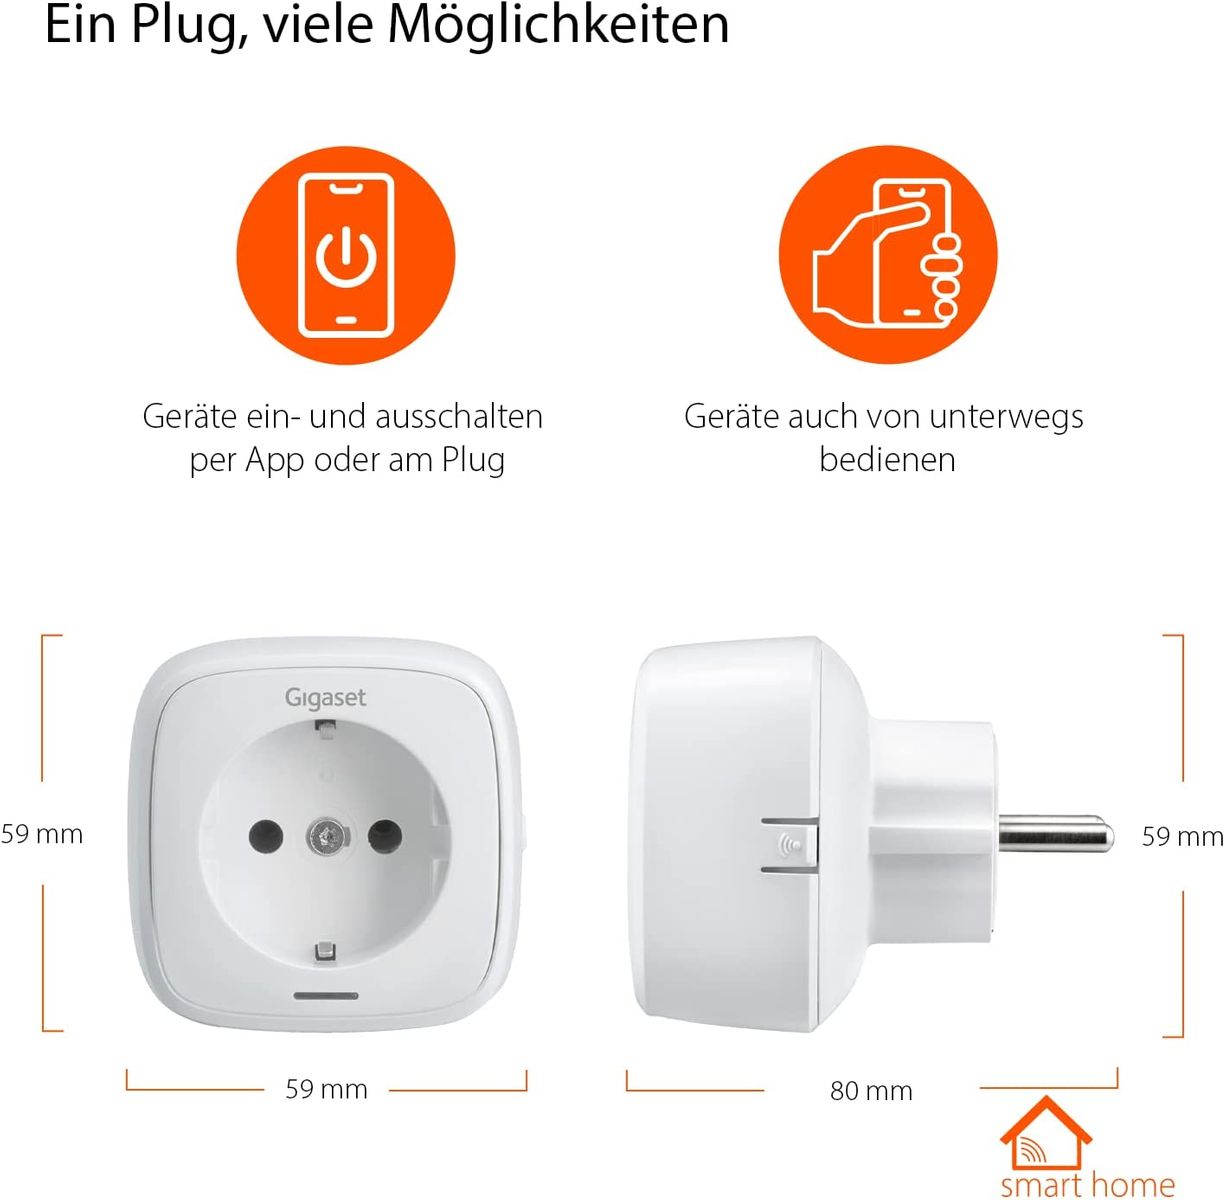 Gigaset Plug ONE X Smart Home Erweiterung Funksteckdose zur Steuerung elektrischer Geräte auch in Abwesenheit Zeitschaltuhr Timereinstellung Home Connect Plus Base erforderlich